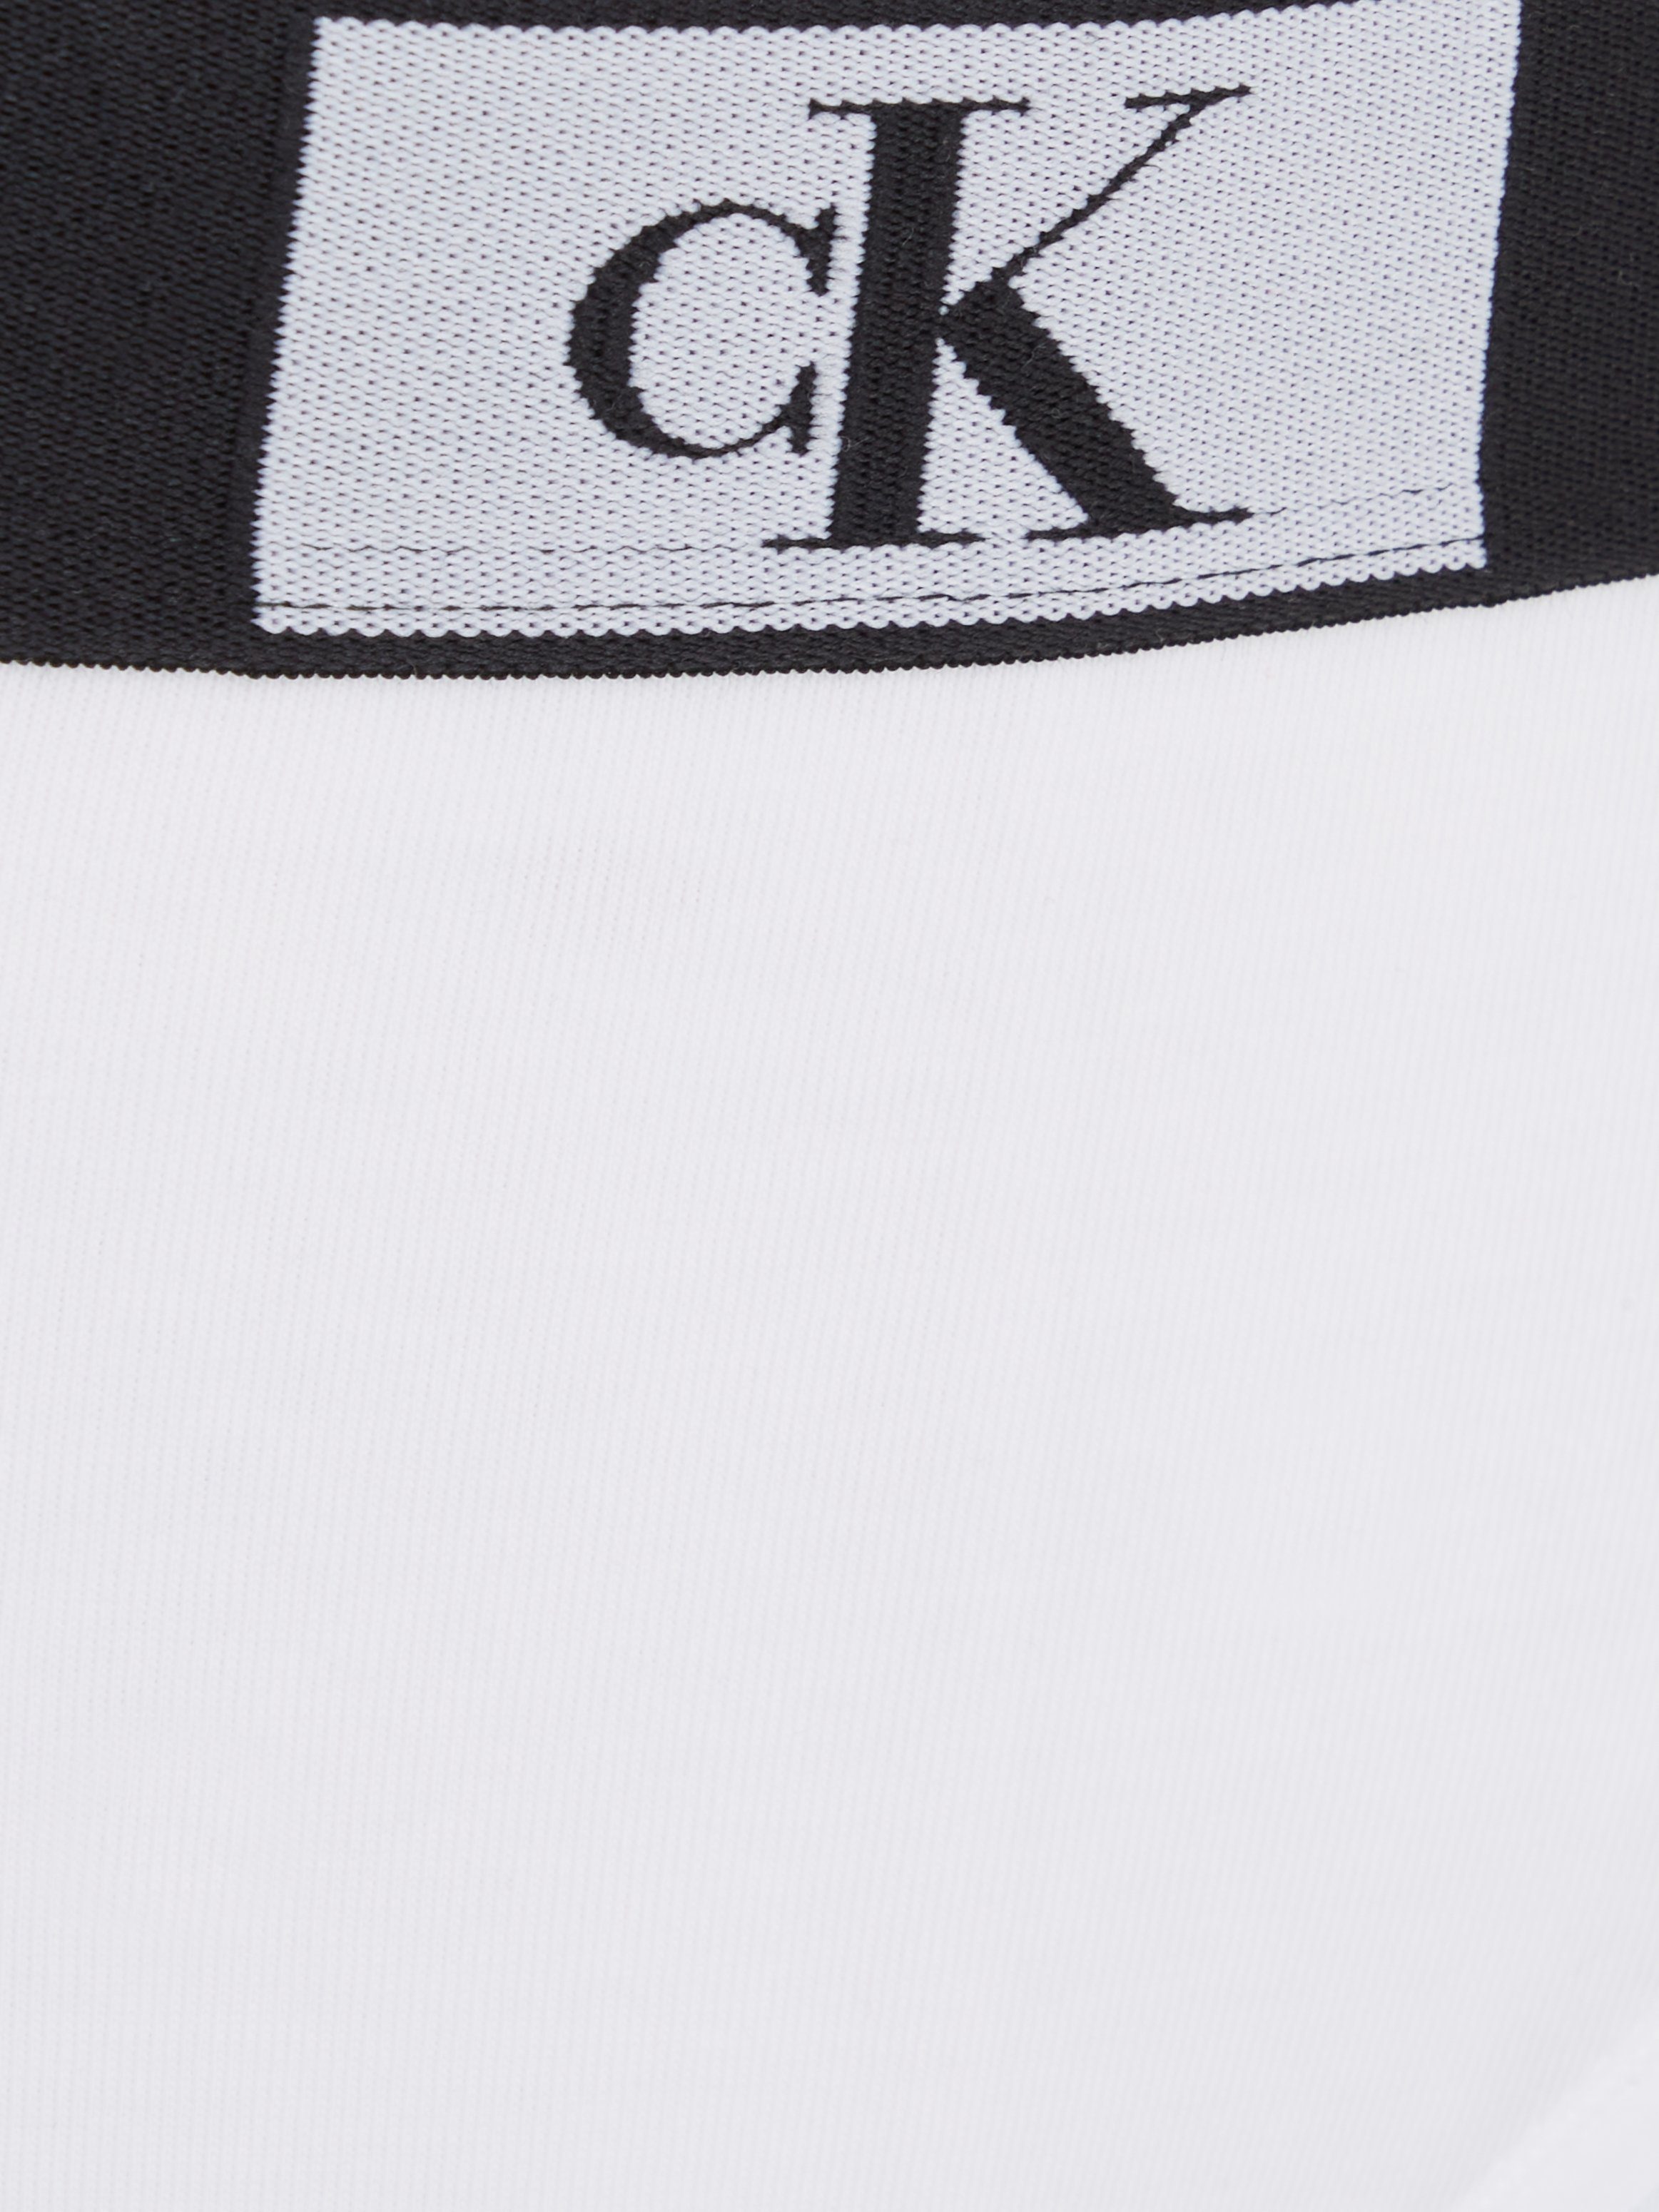 Underwear Klein Calvin mit weiß Bikinislip Allover-Muster